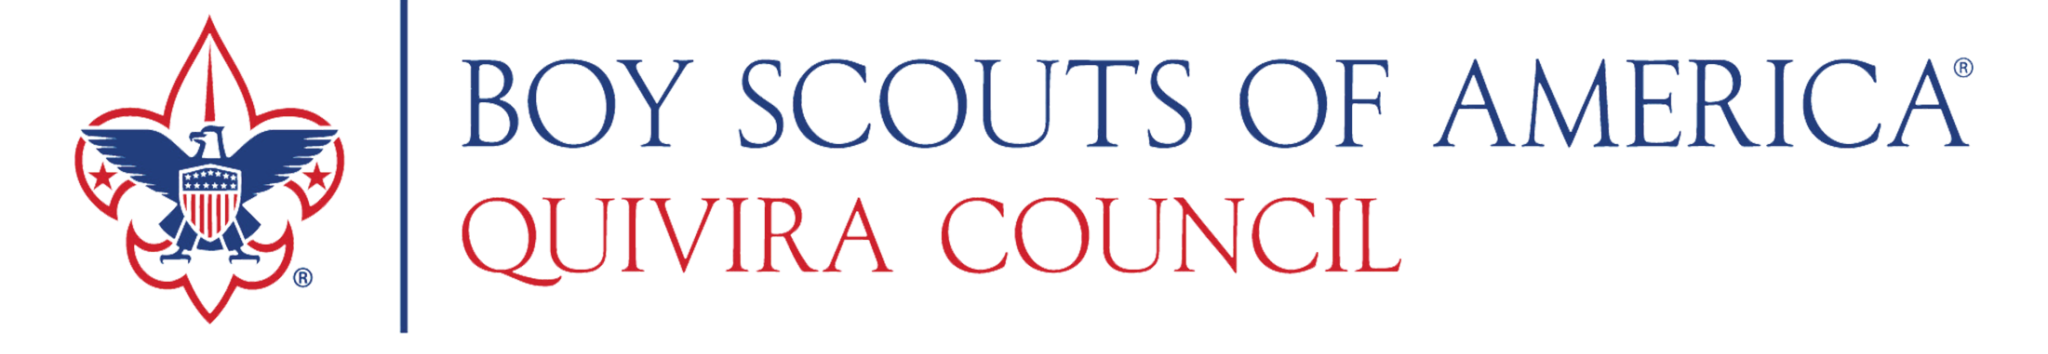 Quivira Council  logo